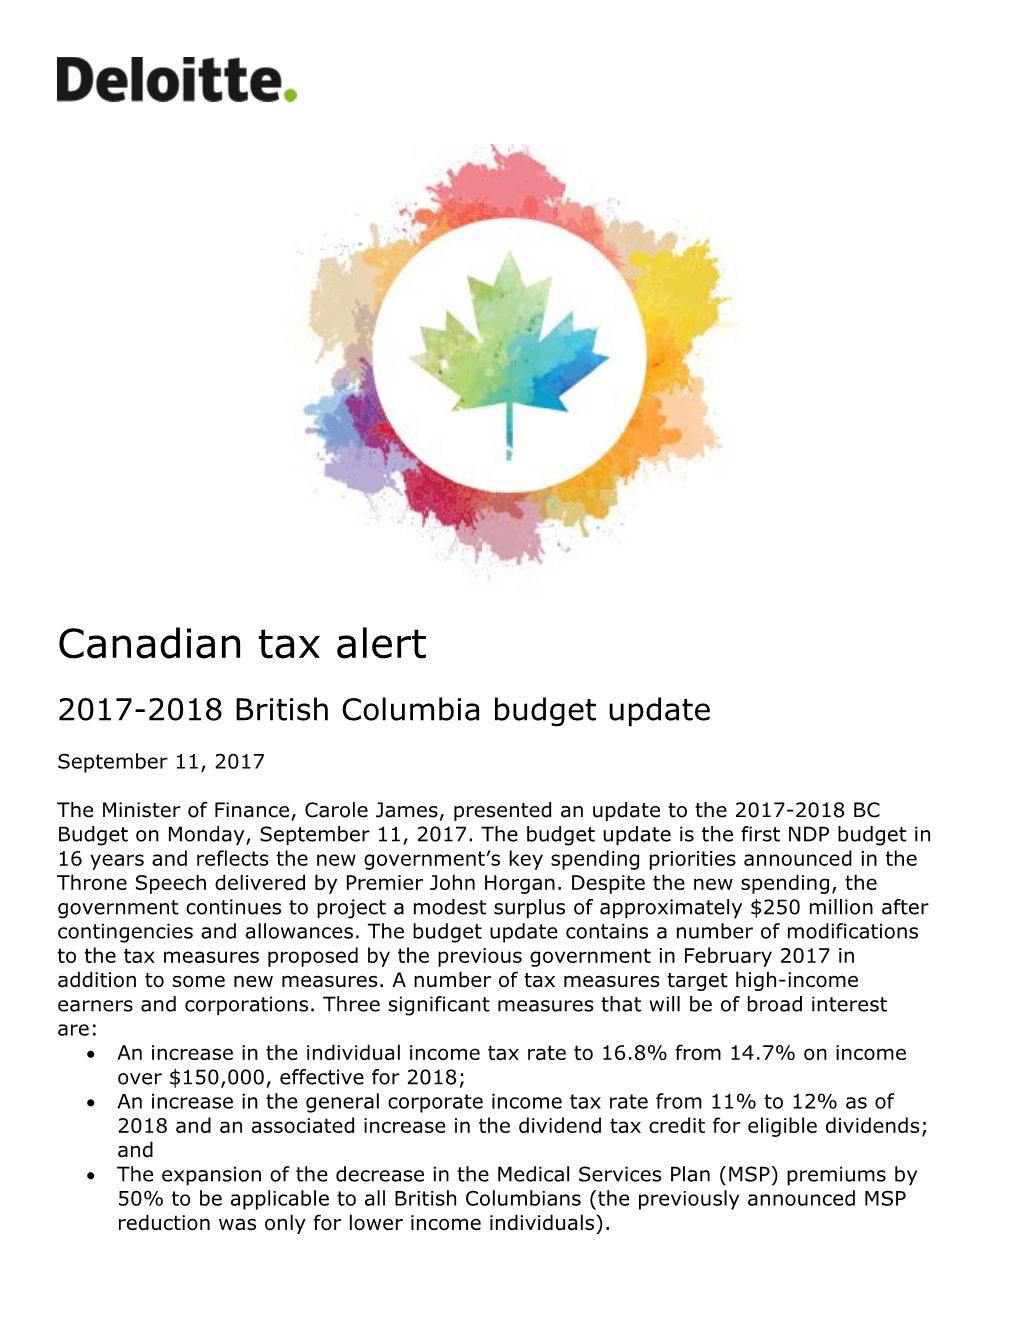 Canadian Tax Alert